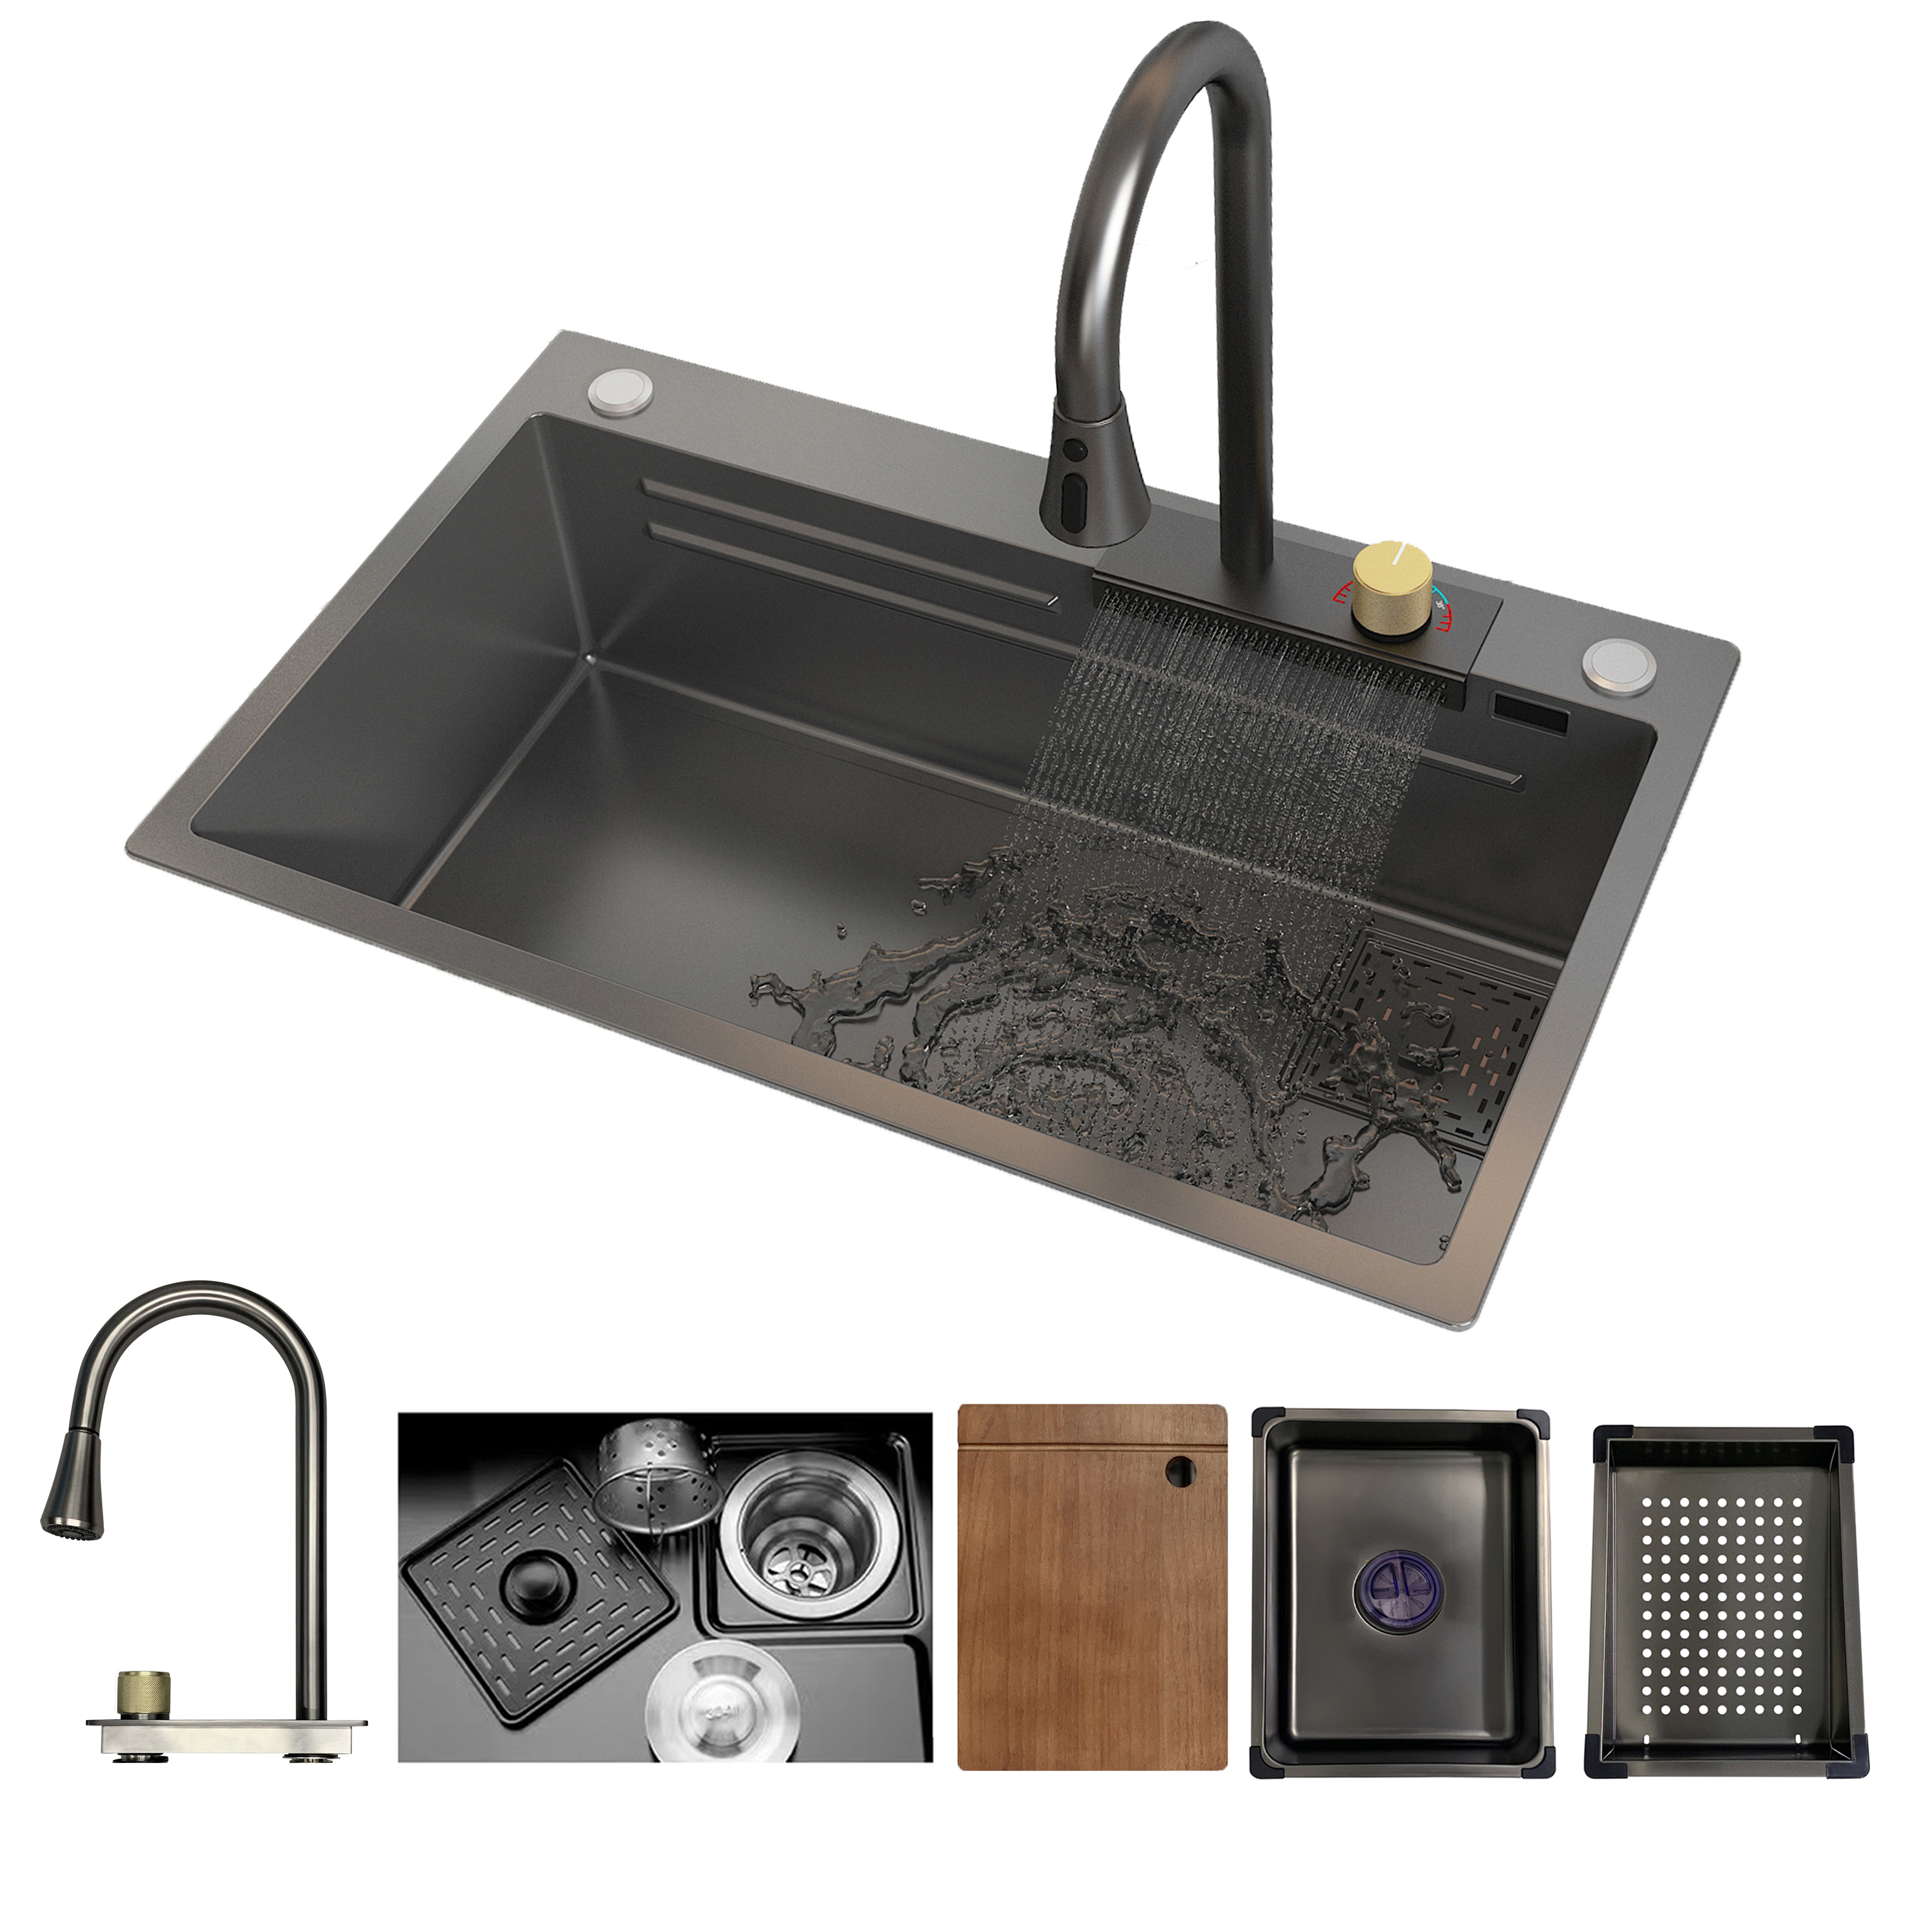 MEJE 30×18 Zoll Edelstahl-Küchenspüle, integriertes Wasserfall- und herunterziehbares Wasserhahn-Set, großes Spülbecken mit Nano-Beschichtung, graue Farbe